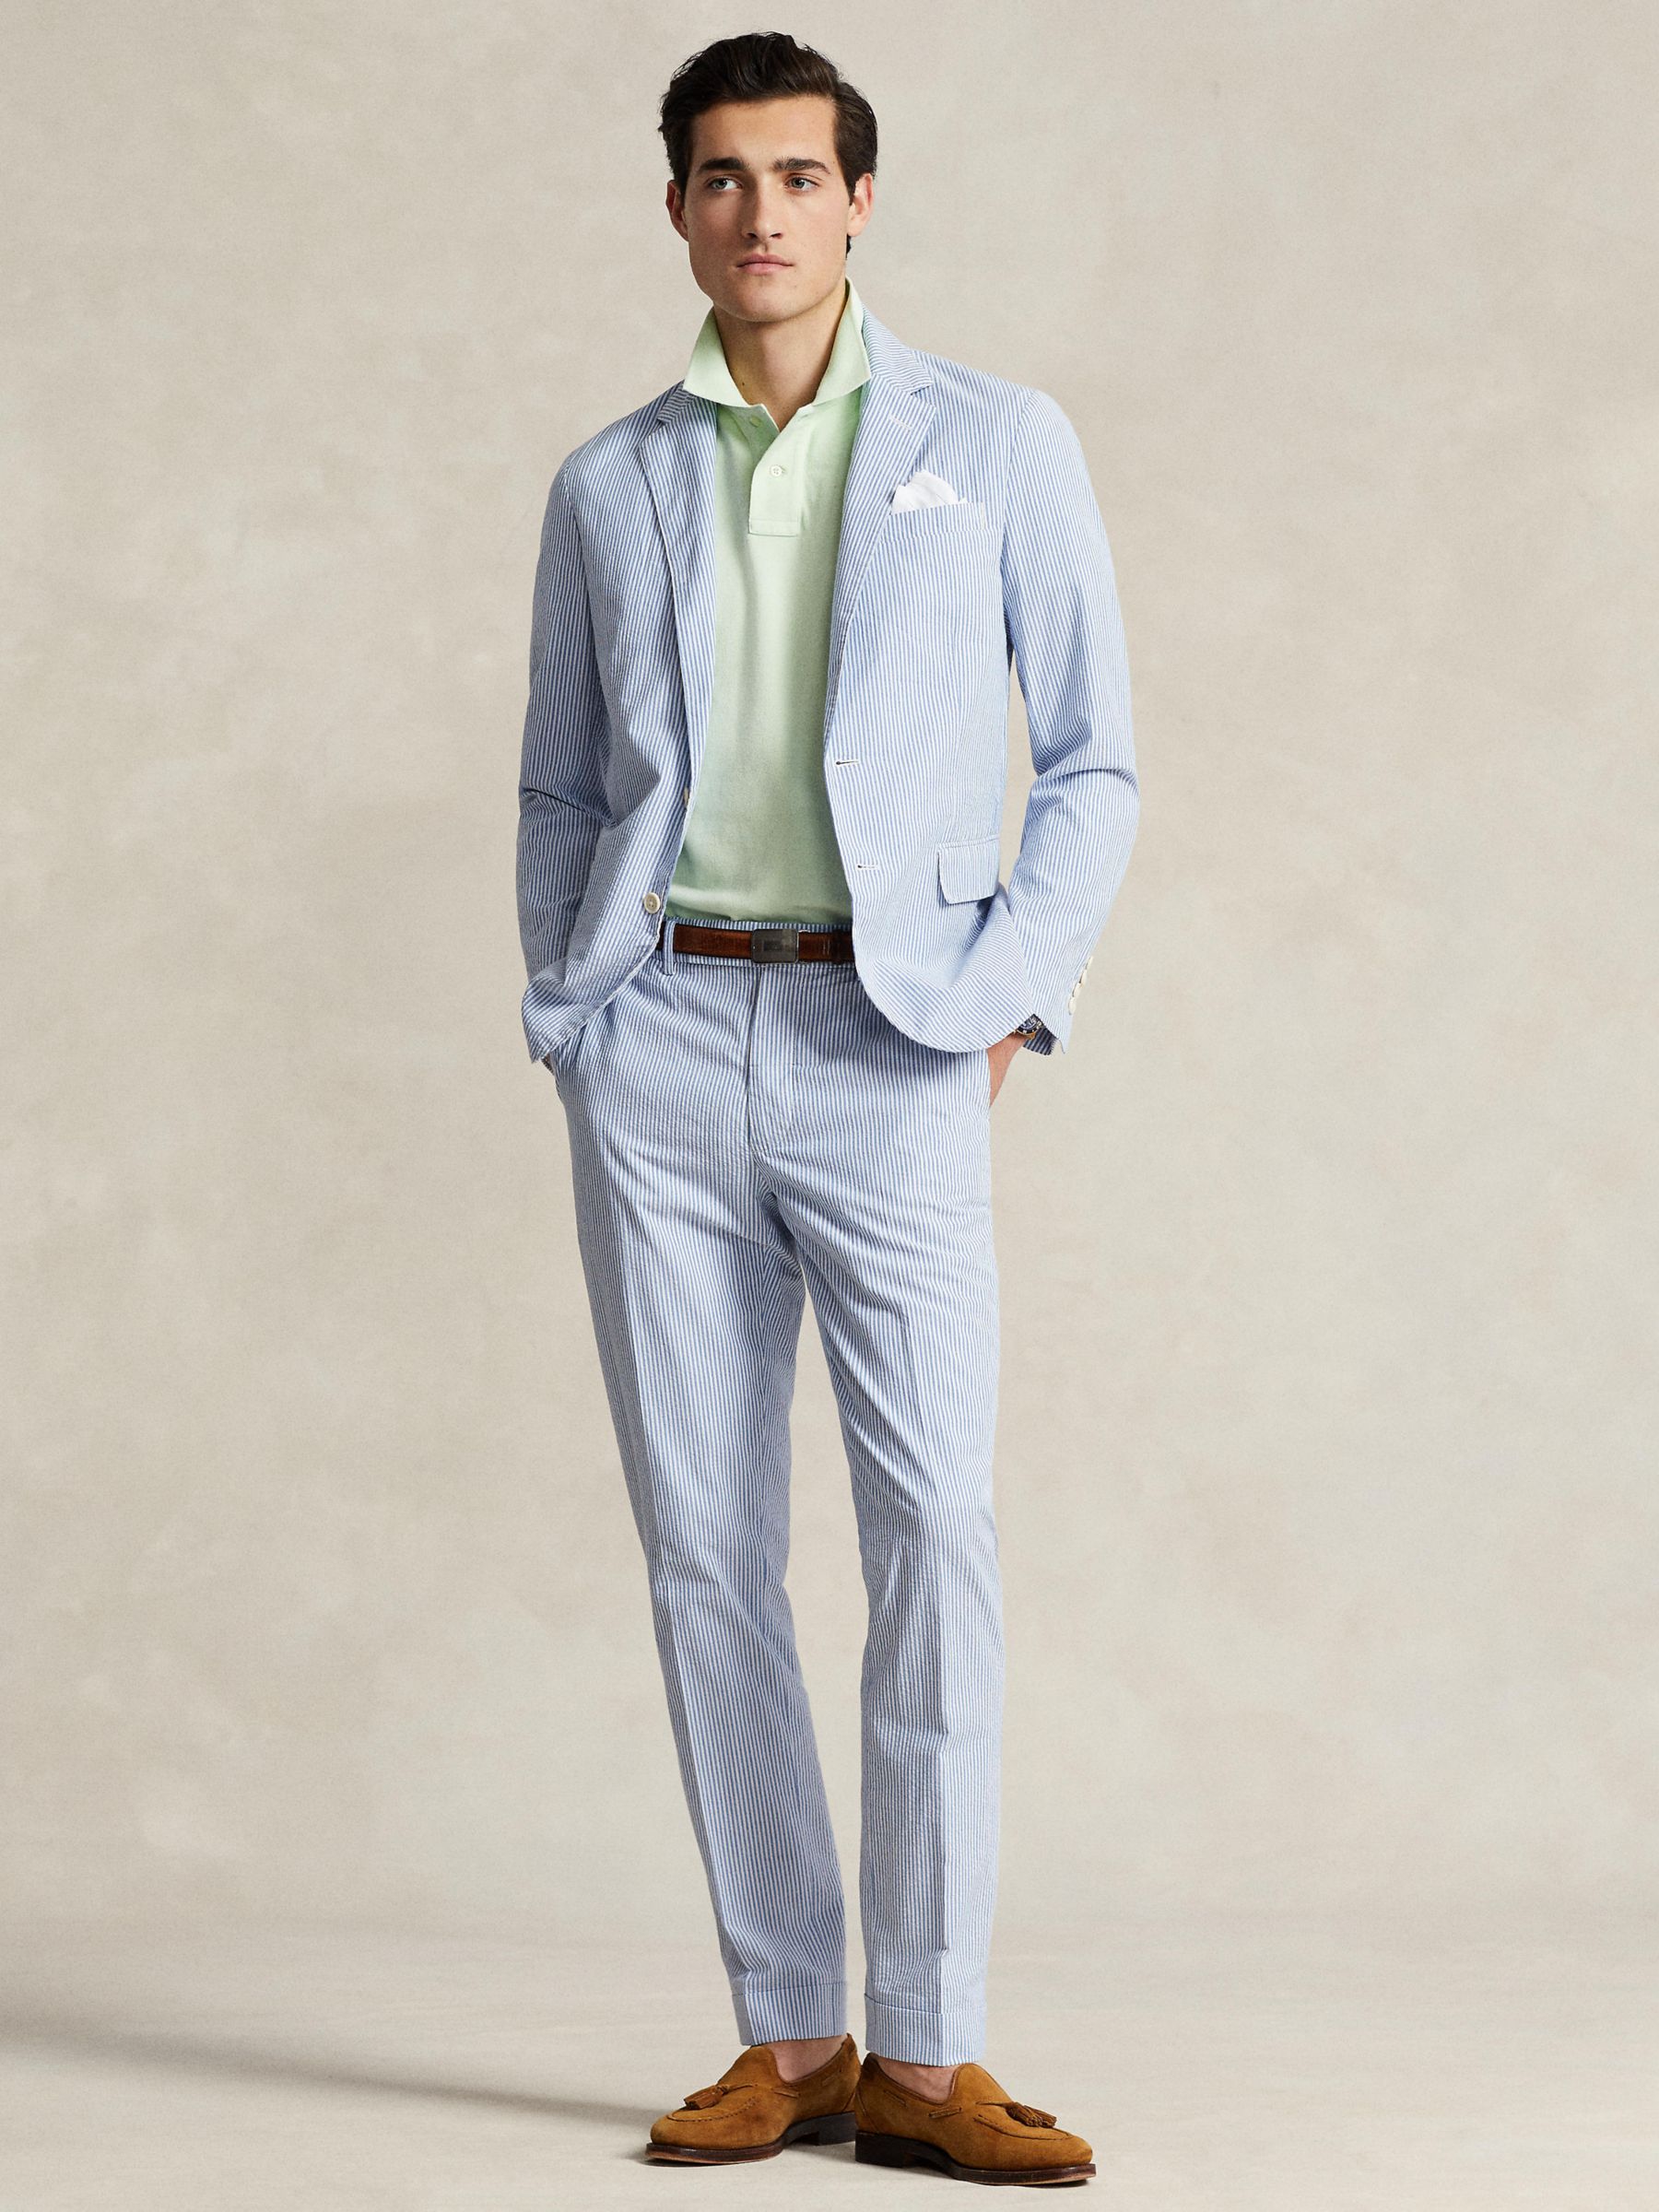 Buy Ralph Lauren Seersucker Suit Trousers, Blue/White Online at johnlewis.com